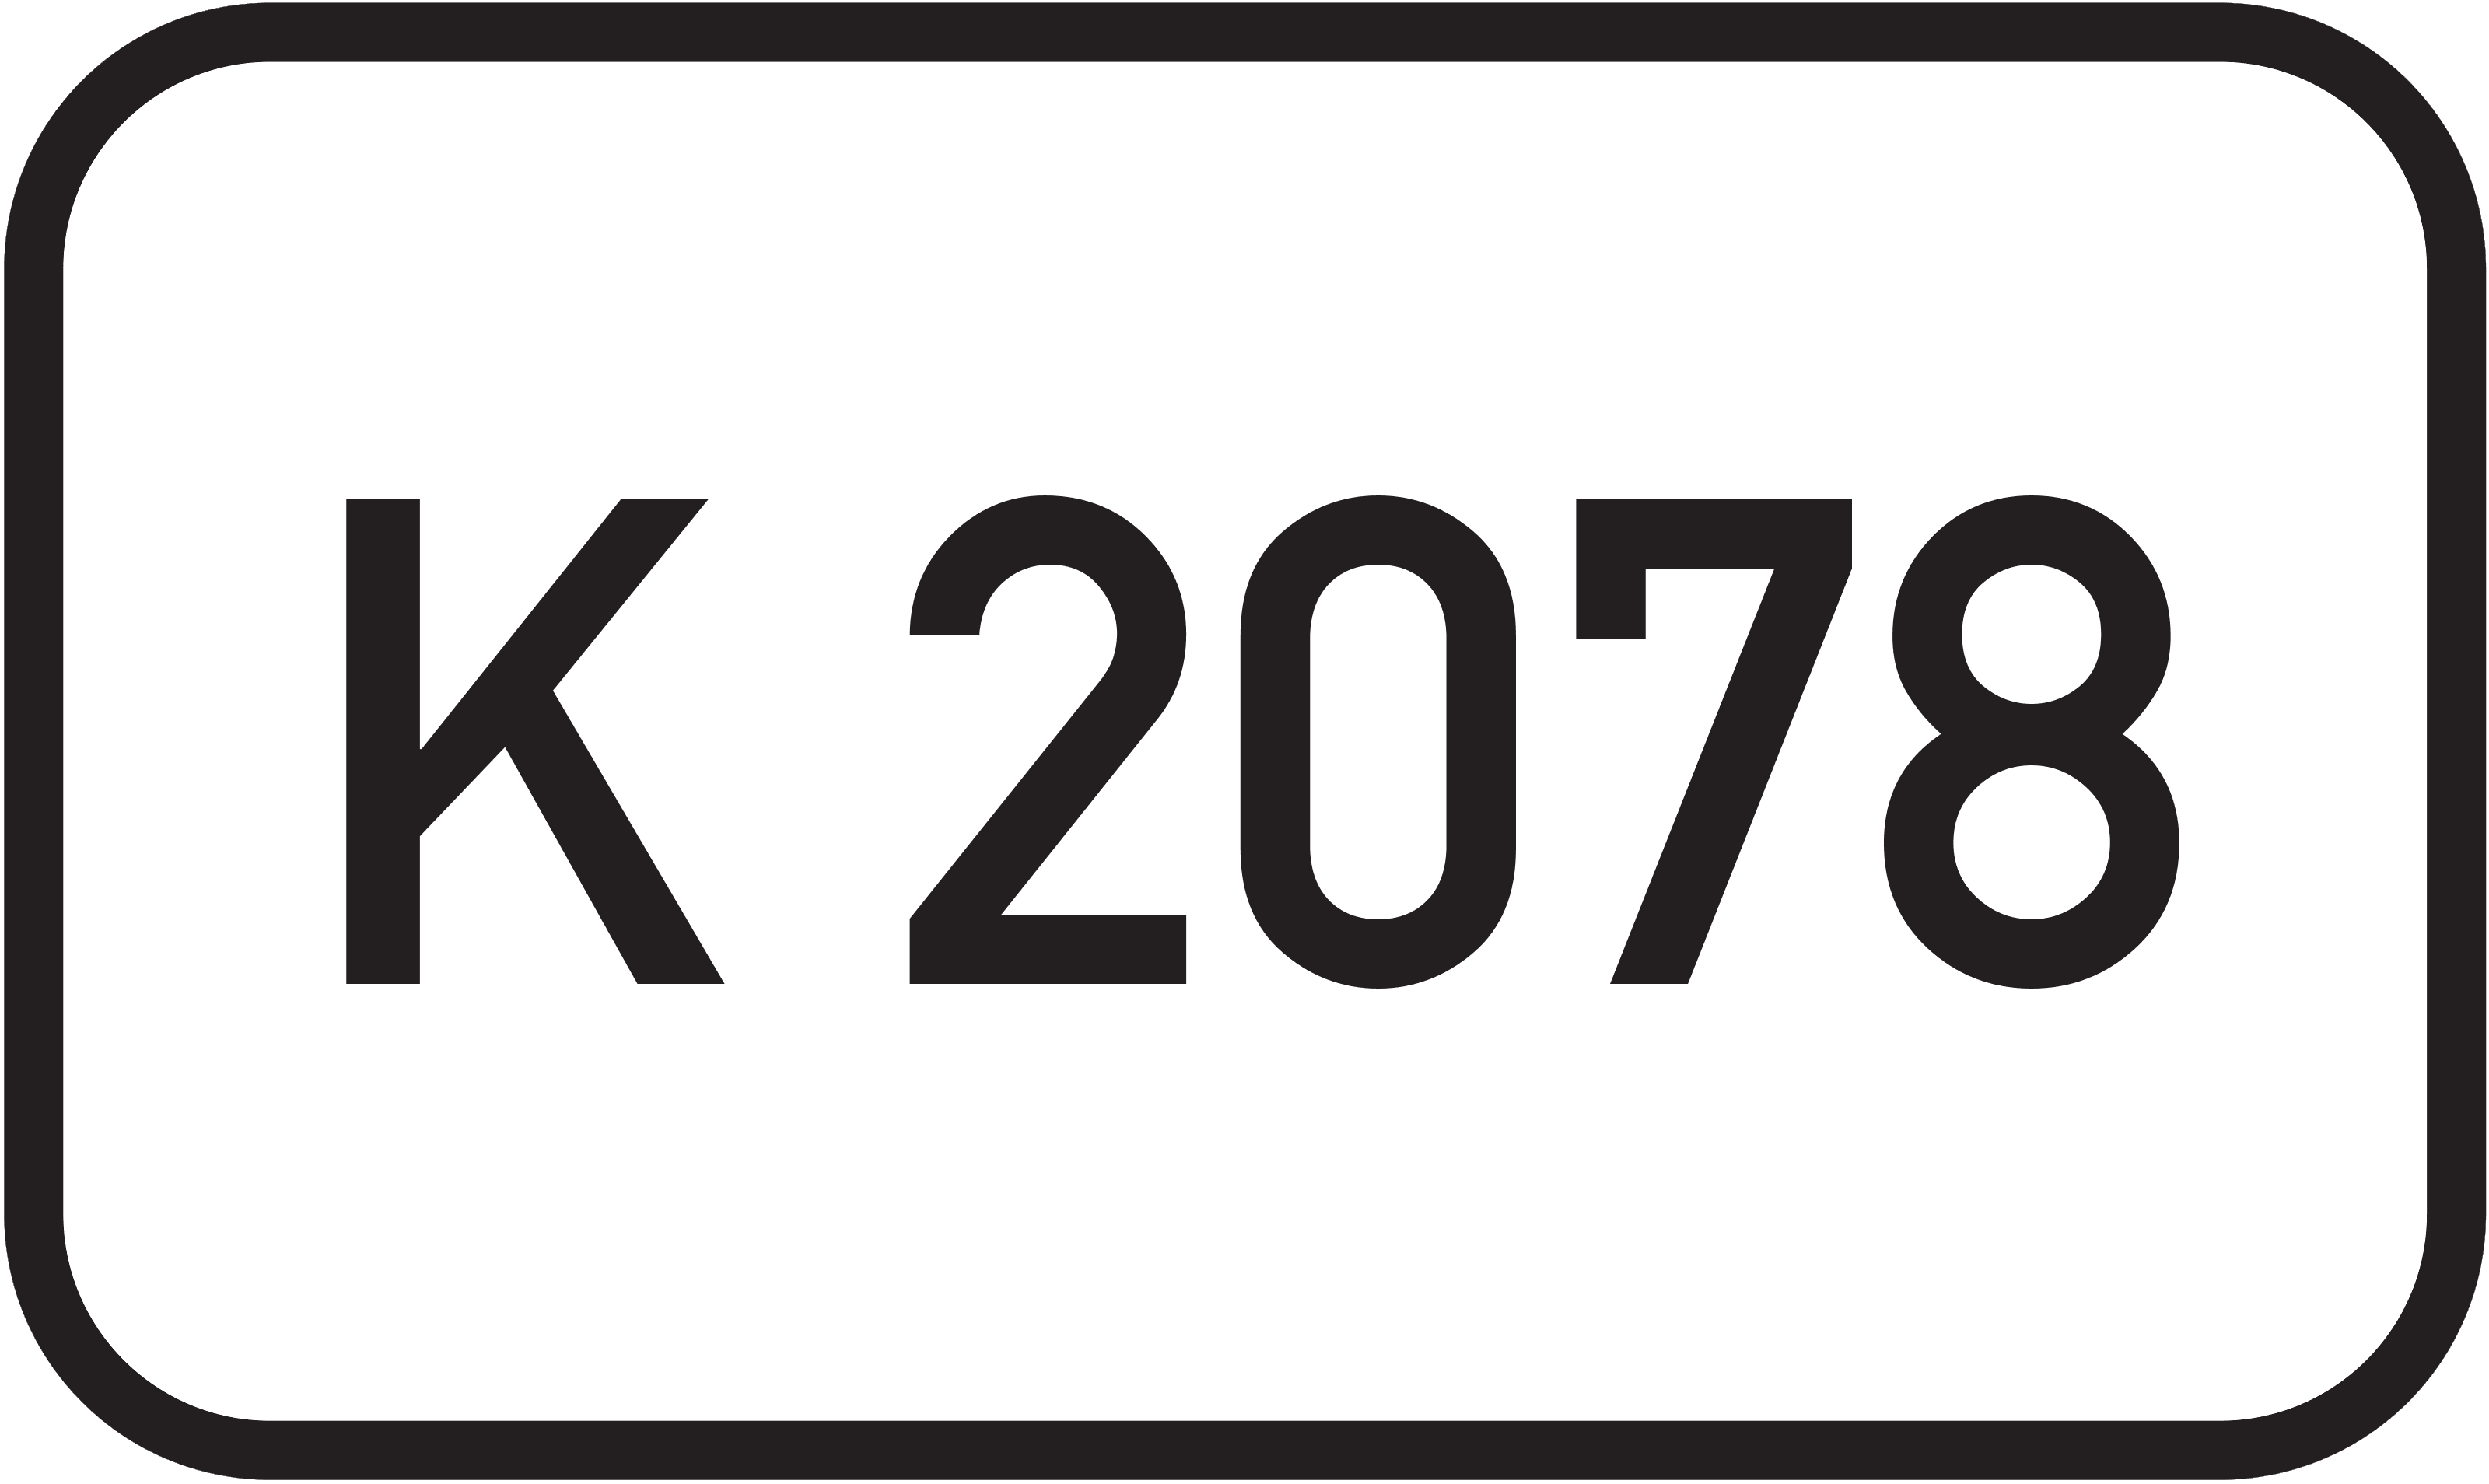 Bundesstraße K 2078